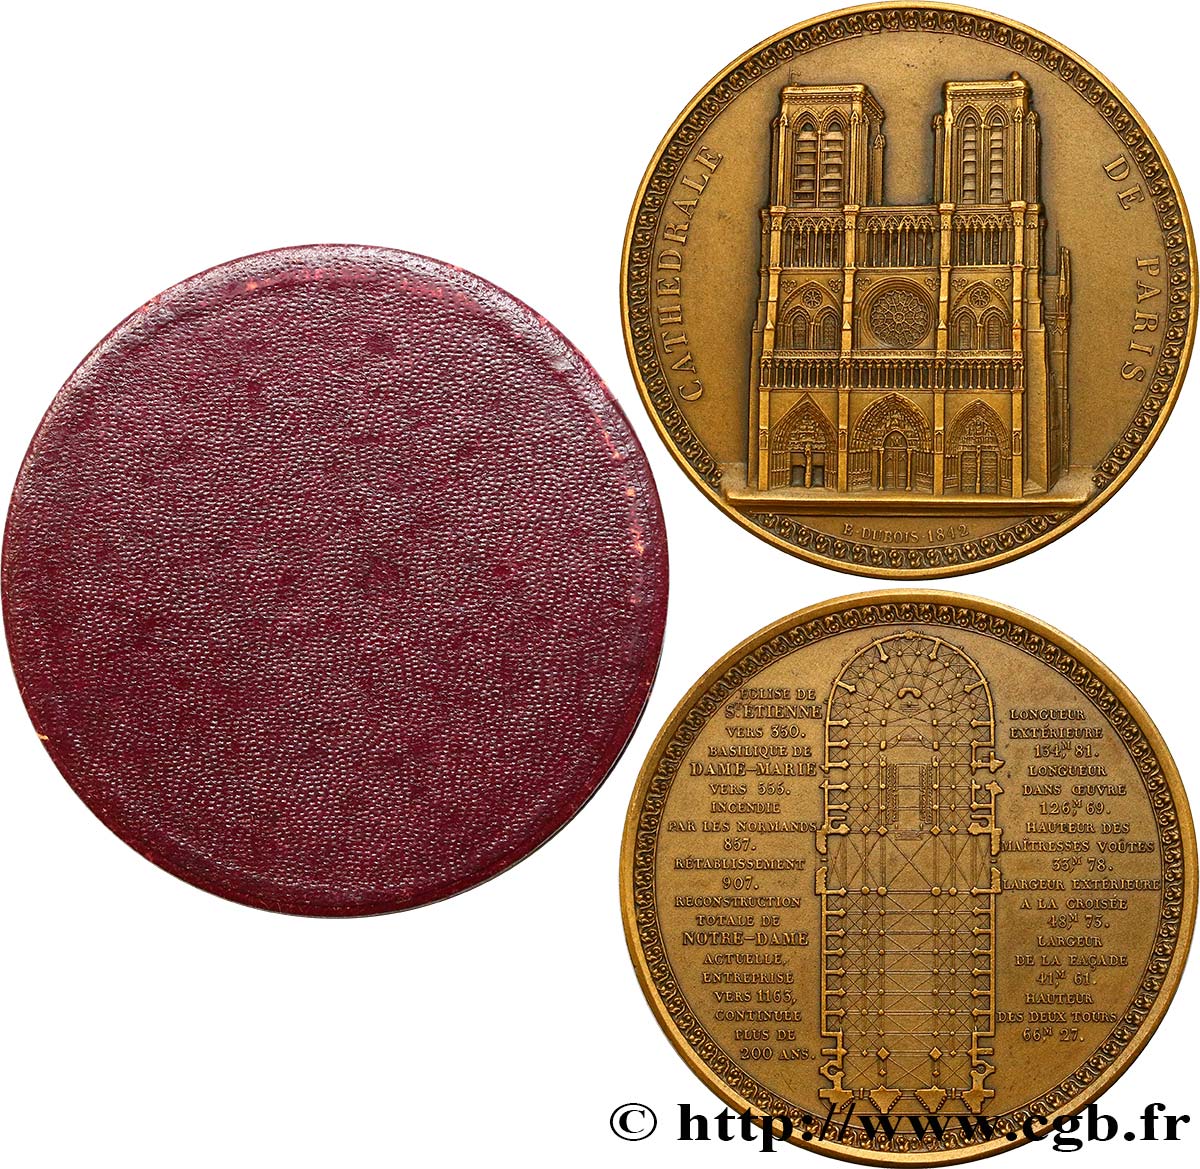 LOUIS-PHILIPPE I Médaille de Notre-Dame de Paris AU